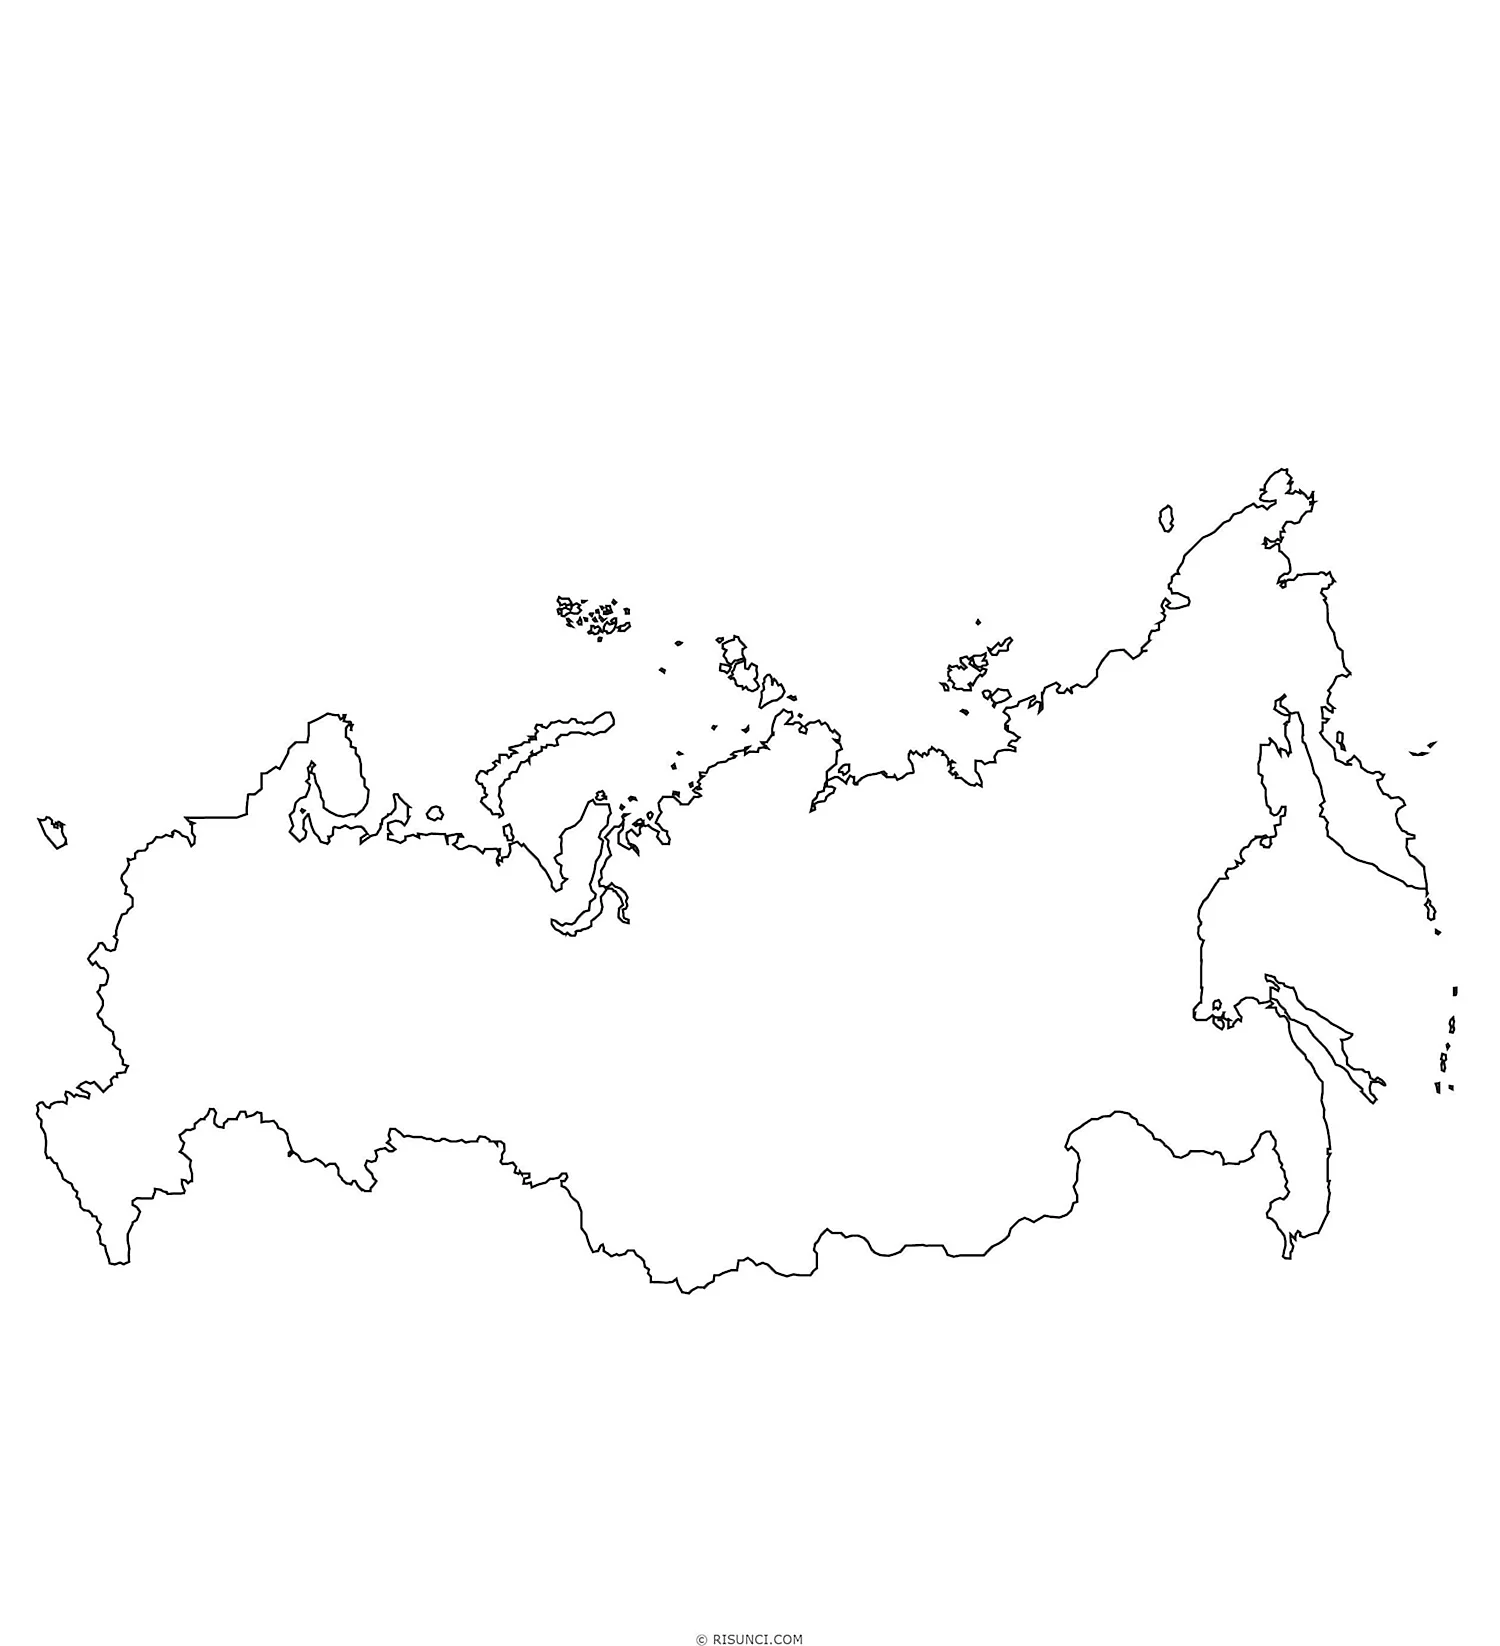 Города федерального значения в России на карте